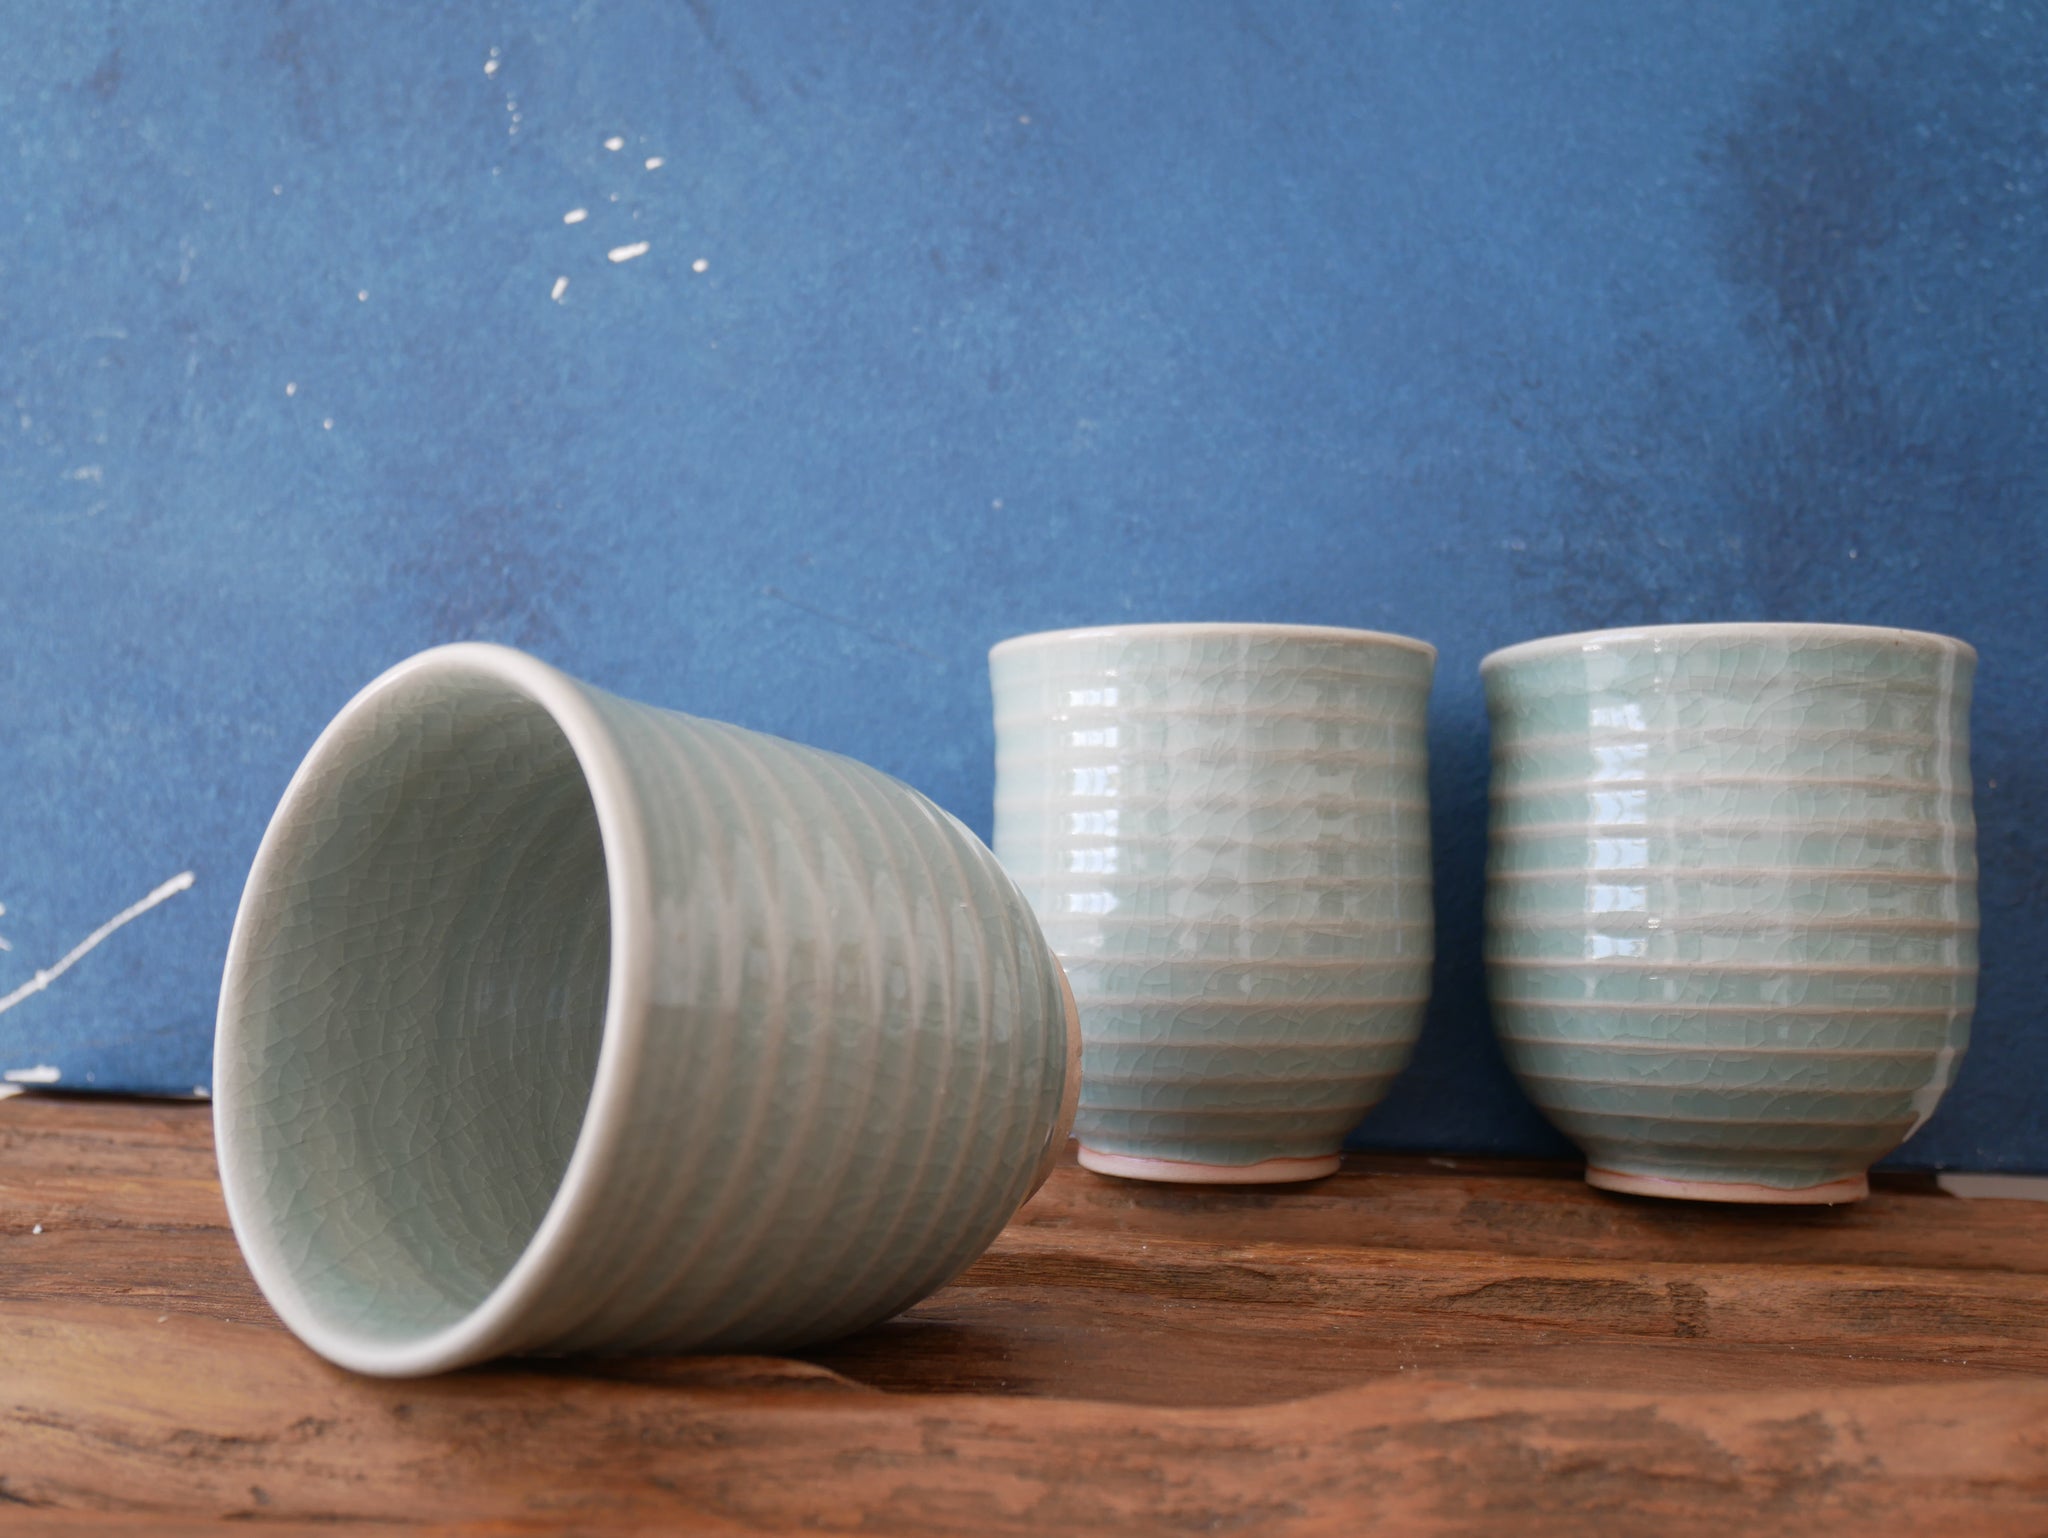 Green-blue celadon glazed - Mug without handle